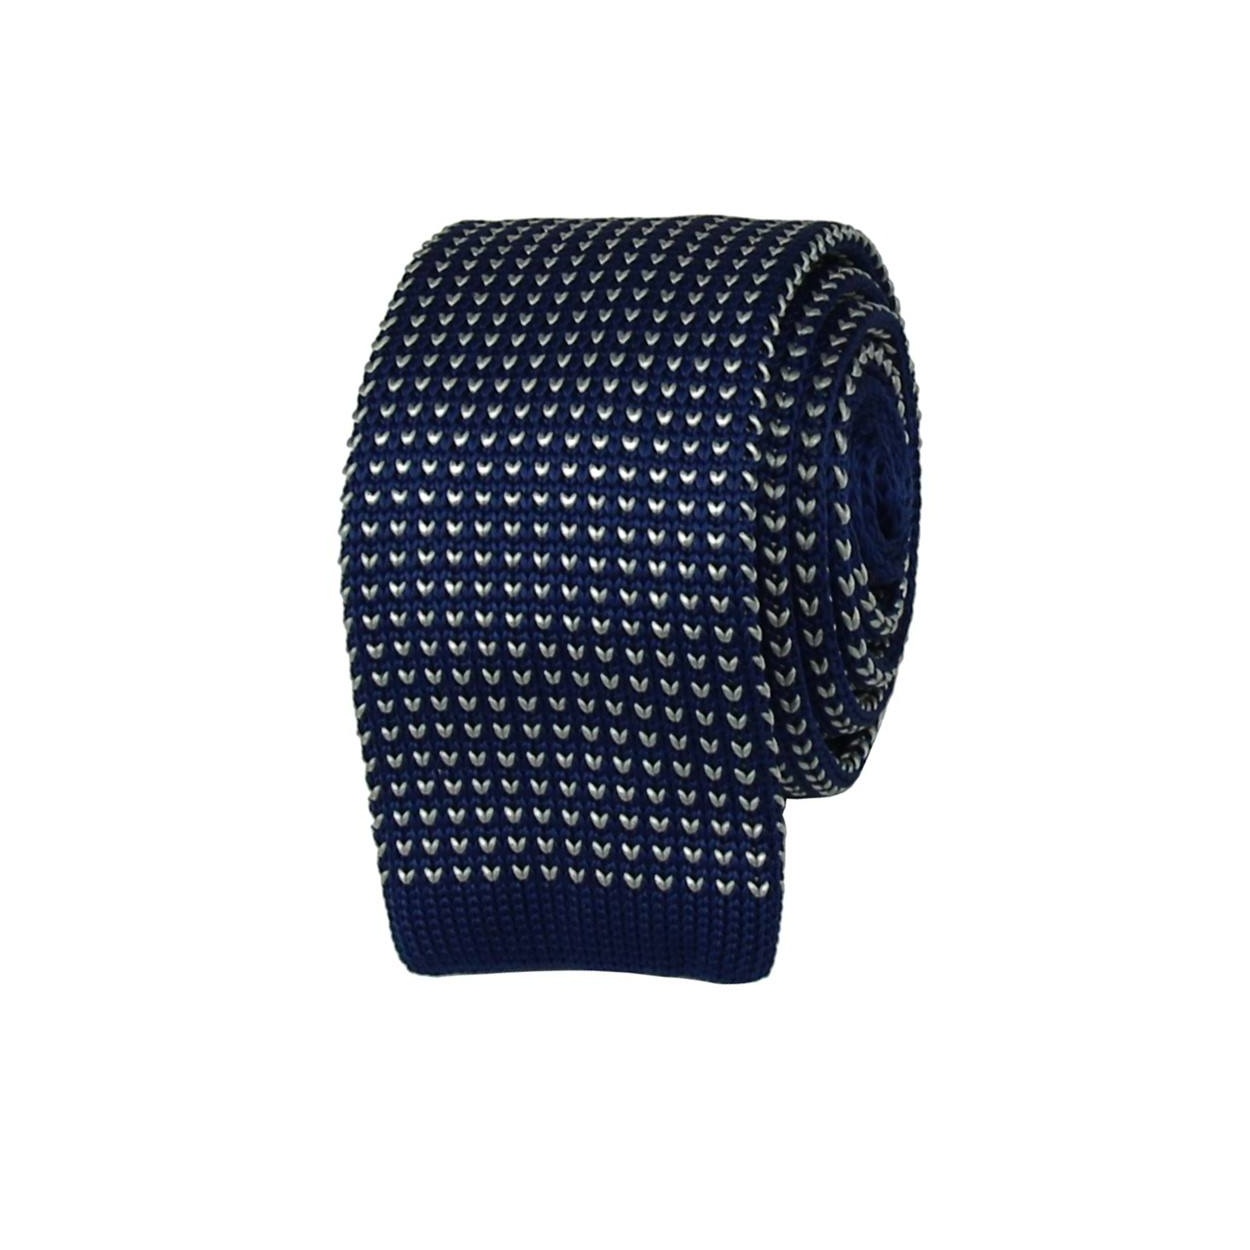 Modrá pletená kravata s bílým vzorem